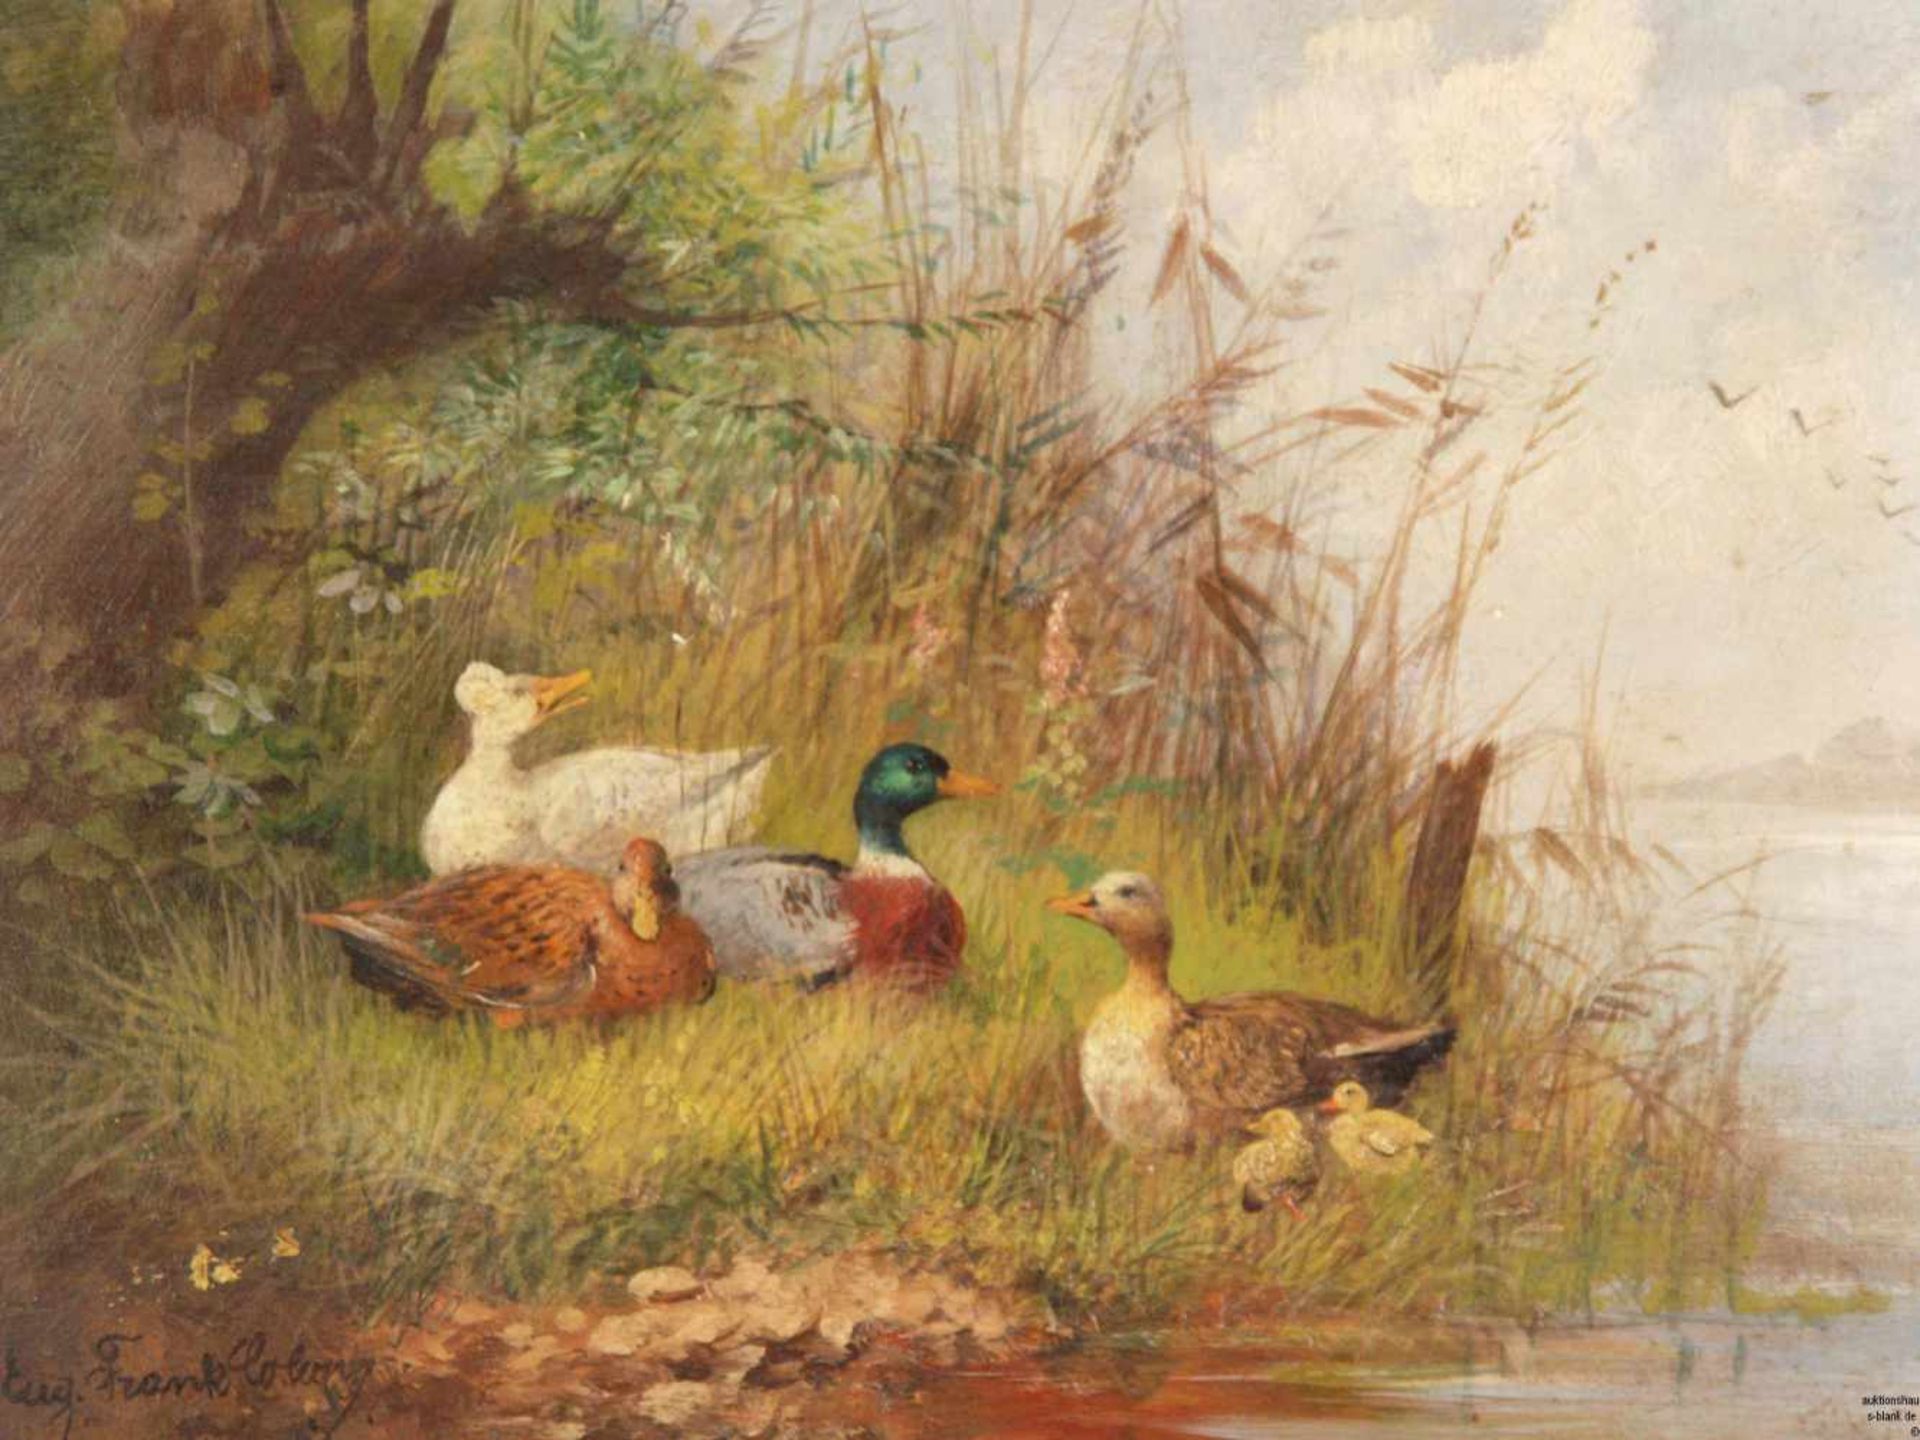 Frank-Colon, Eugen (um 1900/Tiermaler in Düsseldorf und München) - Entenfamilie am Flußufer, Öl